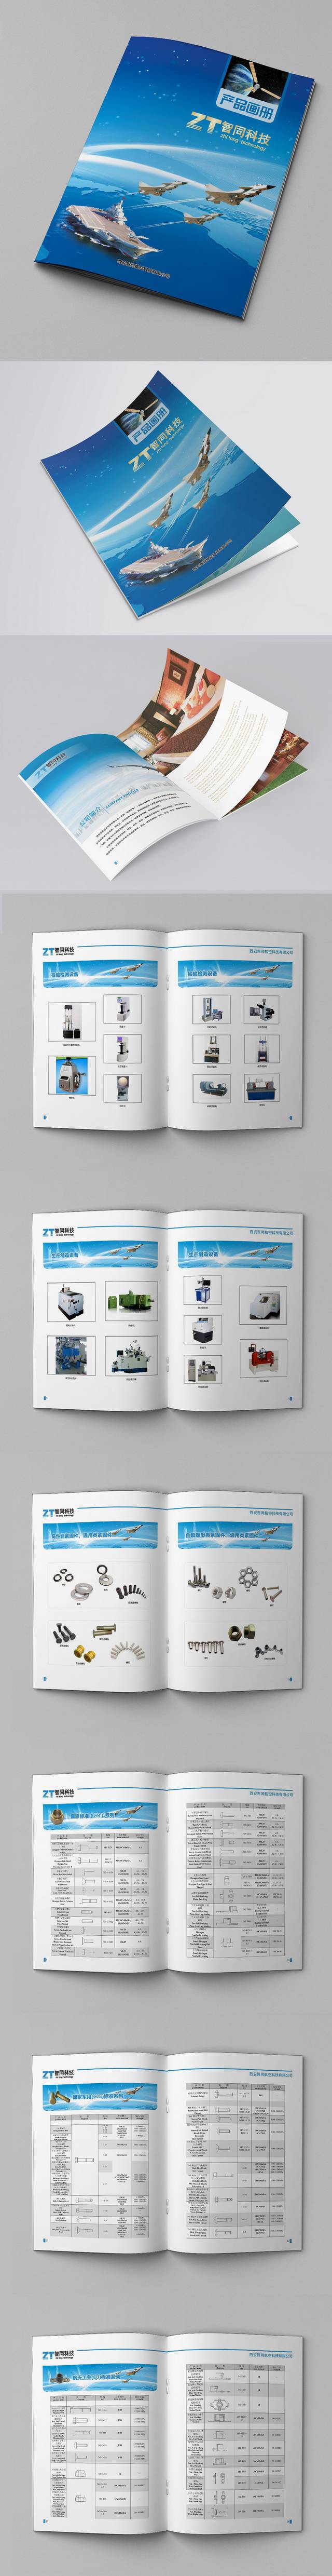 科技设备产品画册